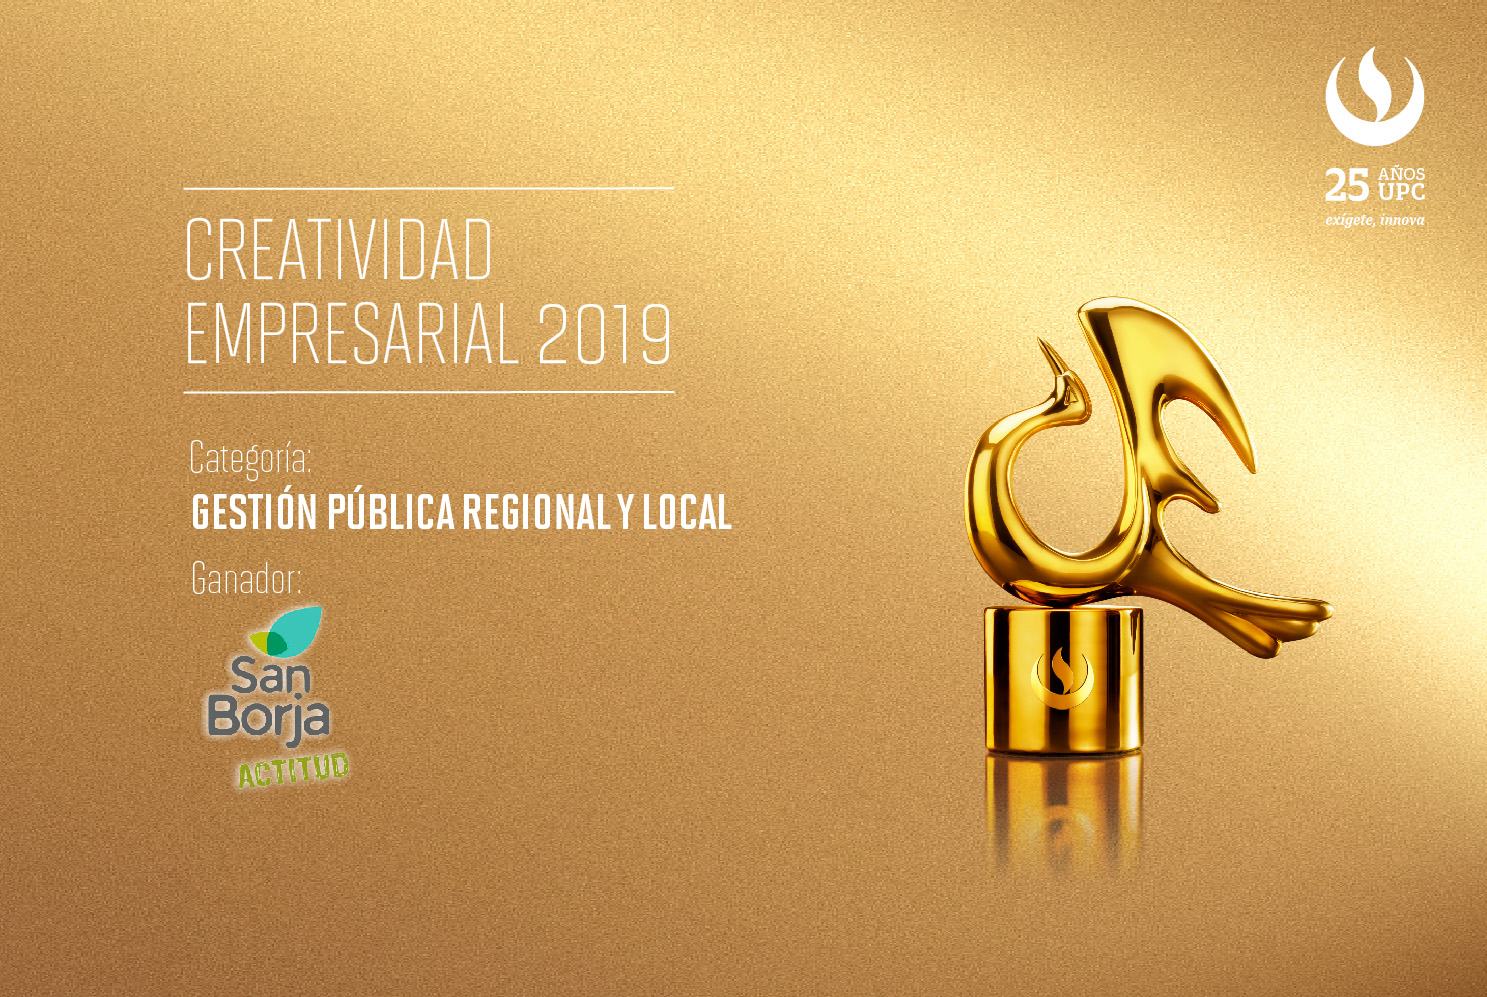 Creatividad Empresarial 2019: El proyecto ‘Economía Circular’ de la Municipalidad de San Borja ganó en la categoría Pública Regional y Local